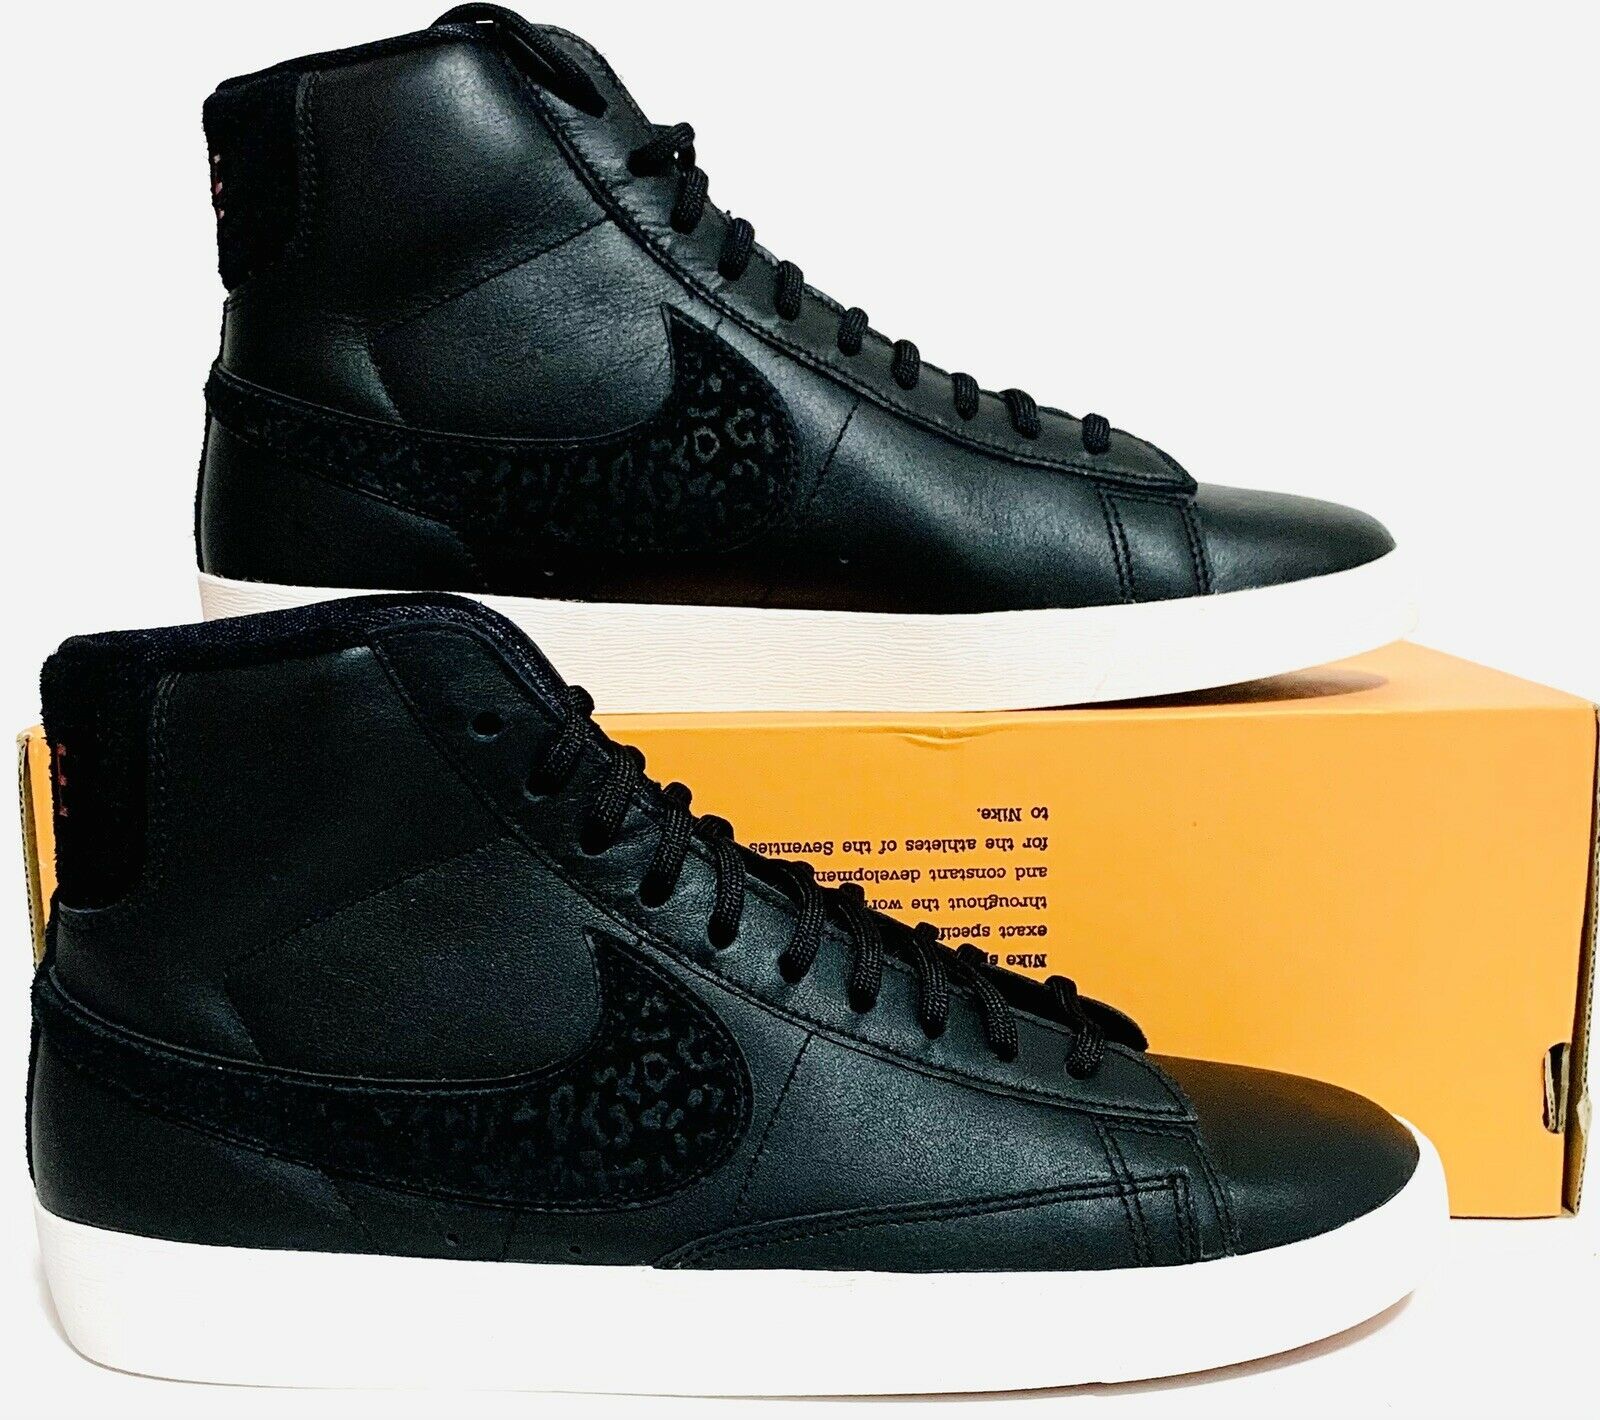 Nike Womens Blazer Mid Rebel Shoes Sz(9) Black/Sail BV6114-001 Rare NIOB